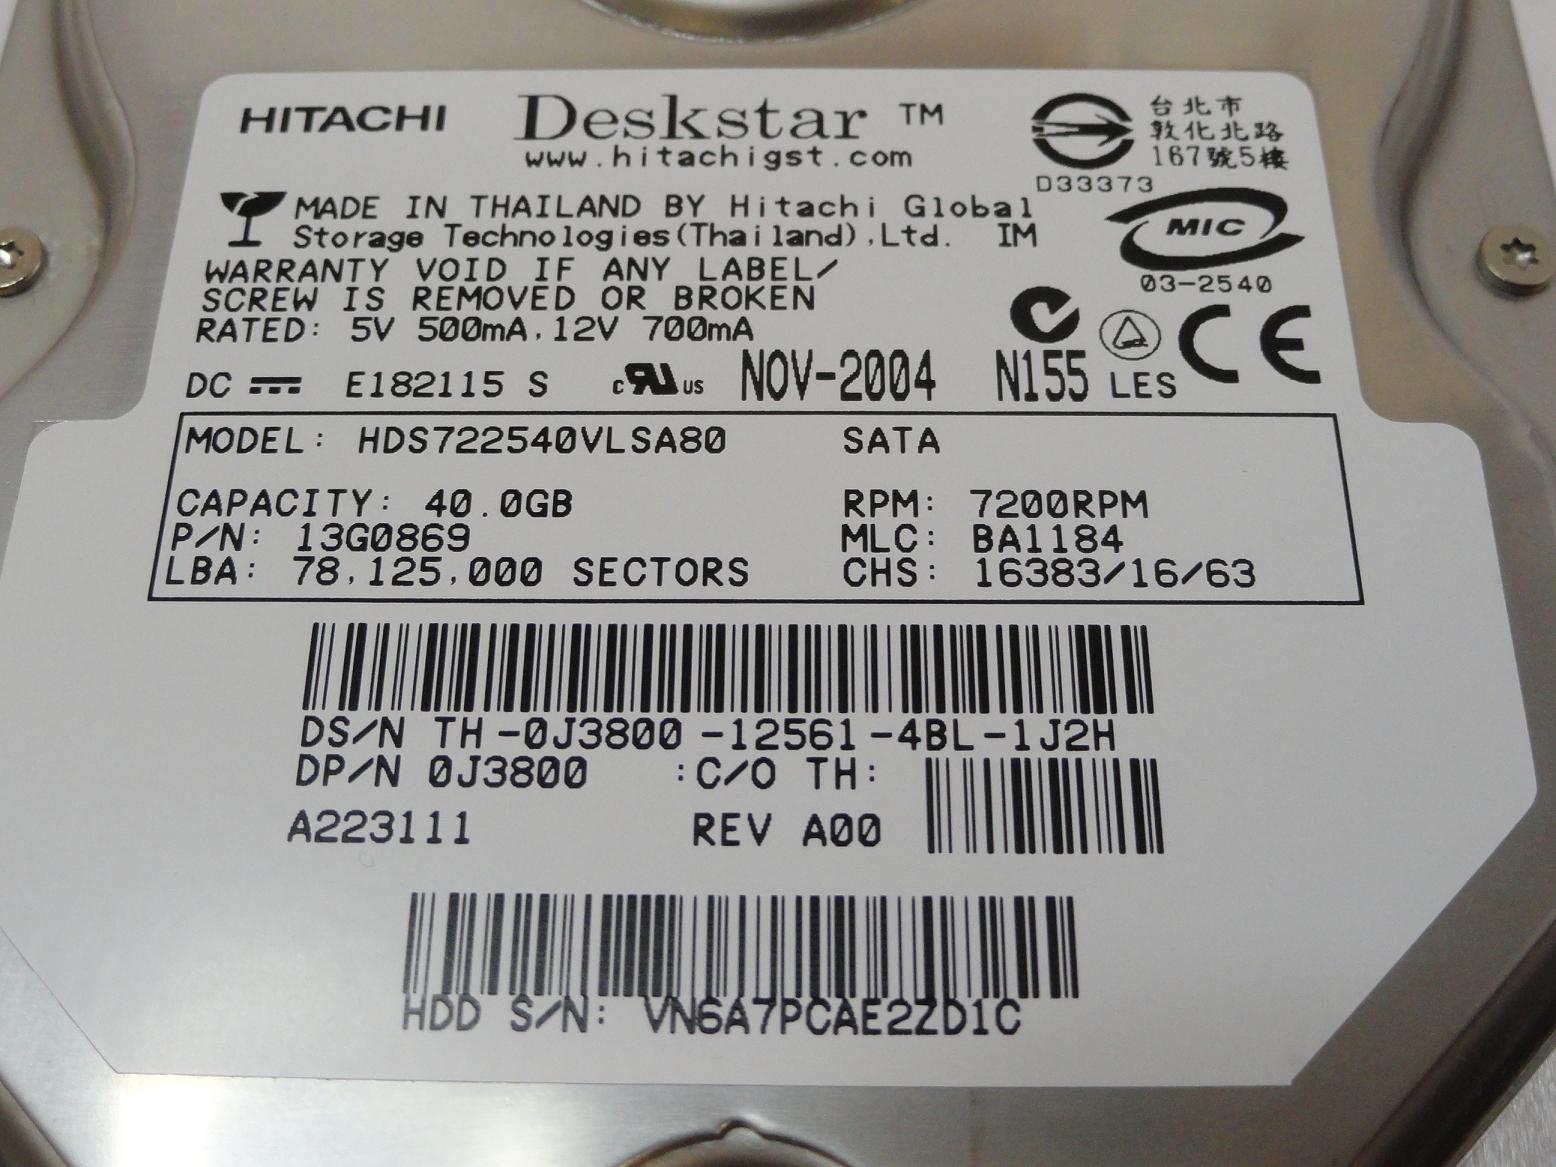 PR20218_13G0869_Hitachi Dell 40GB SATA 7200rpm 3.5in HDD - Image3